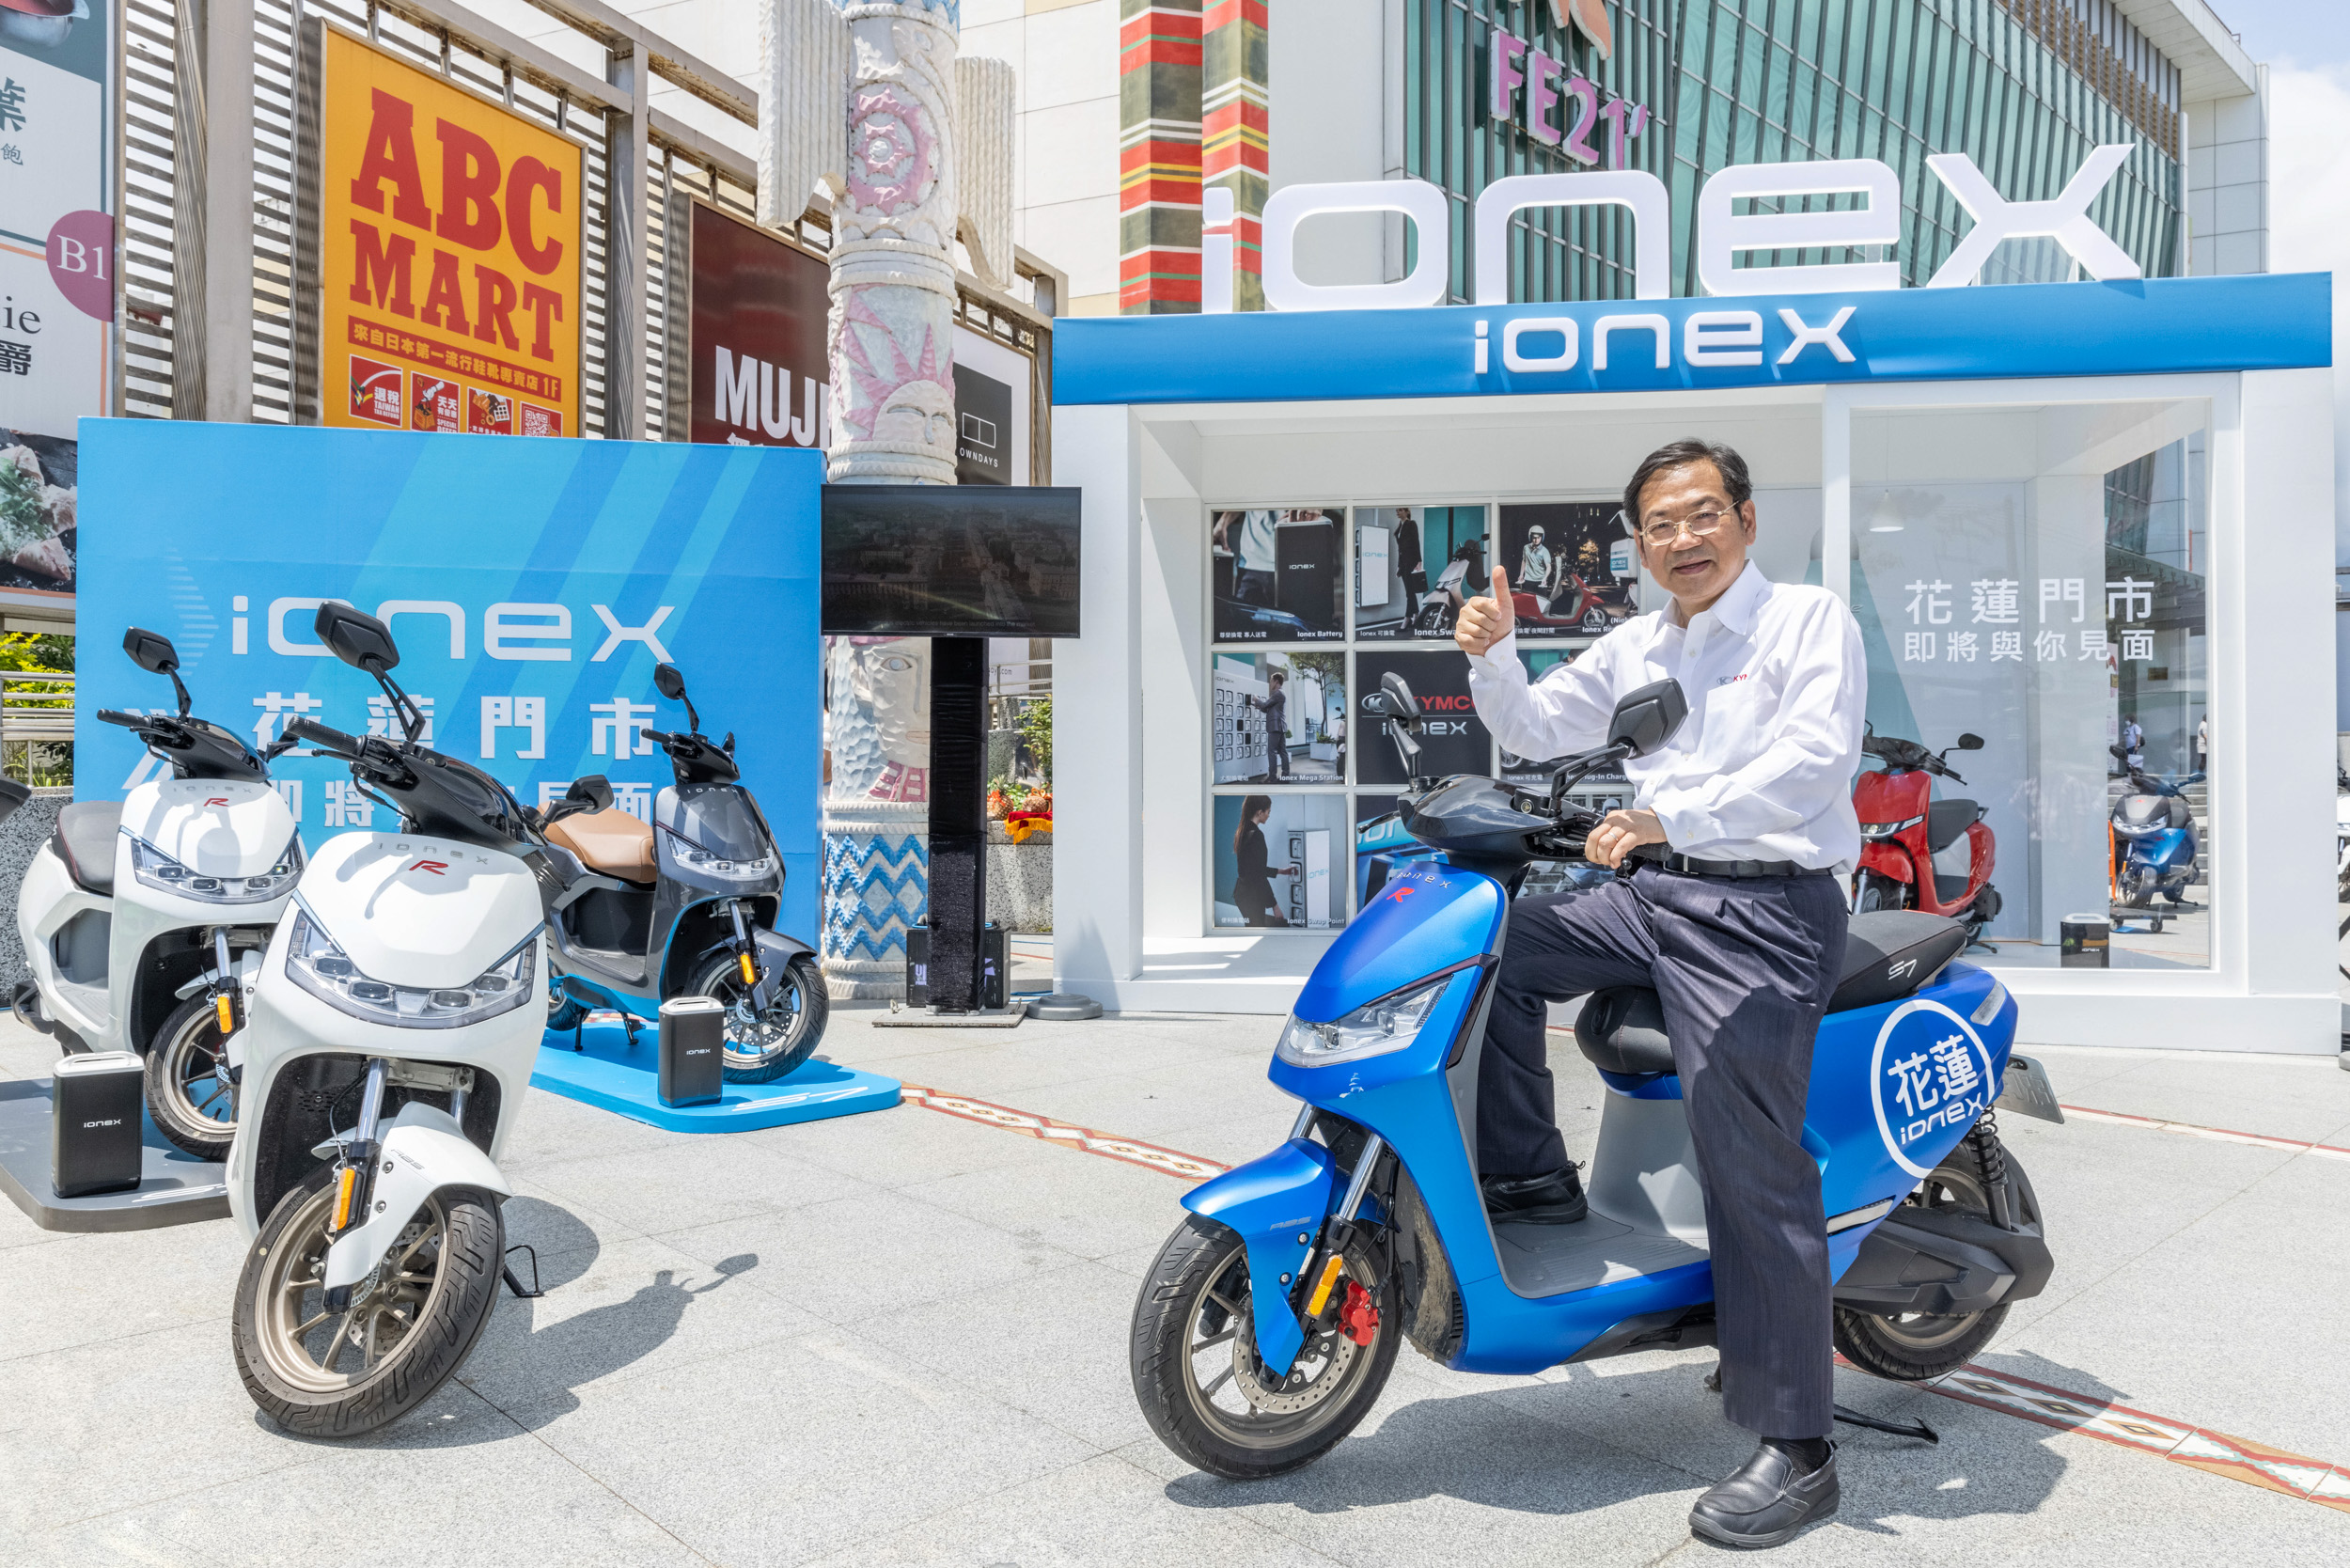 柯俊斌執行長第三站來到花蓮大遠百 Ionex 3.0 快閃店。